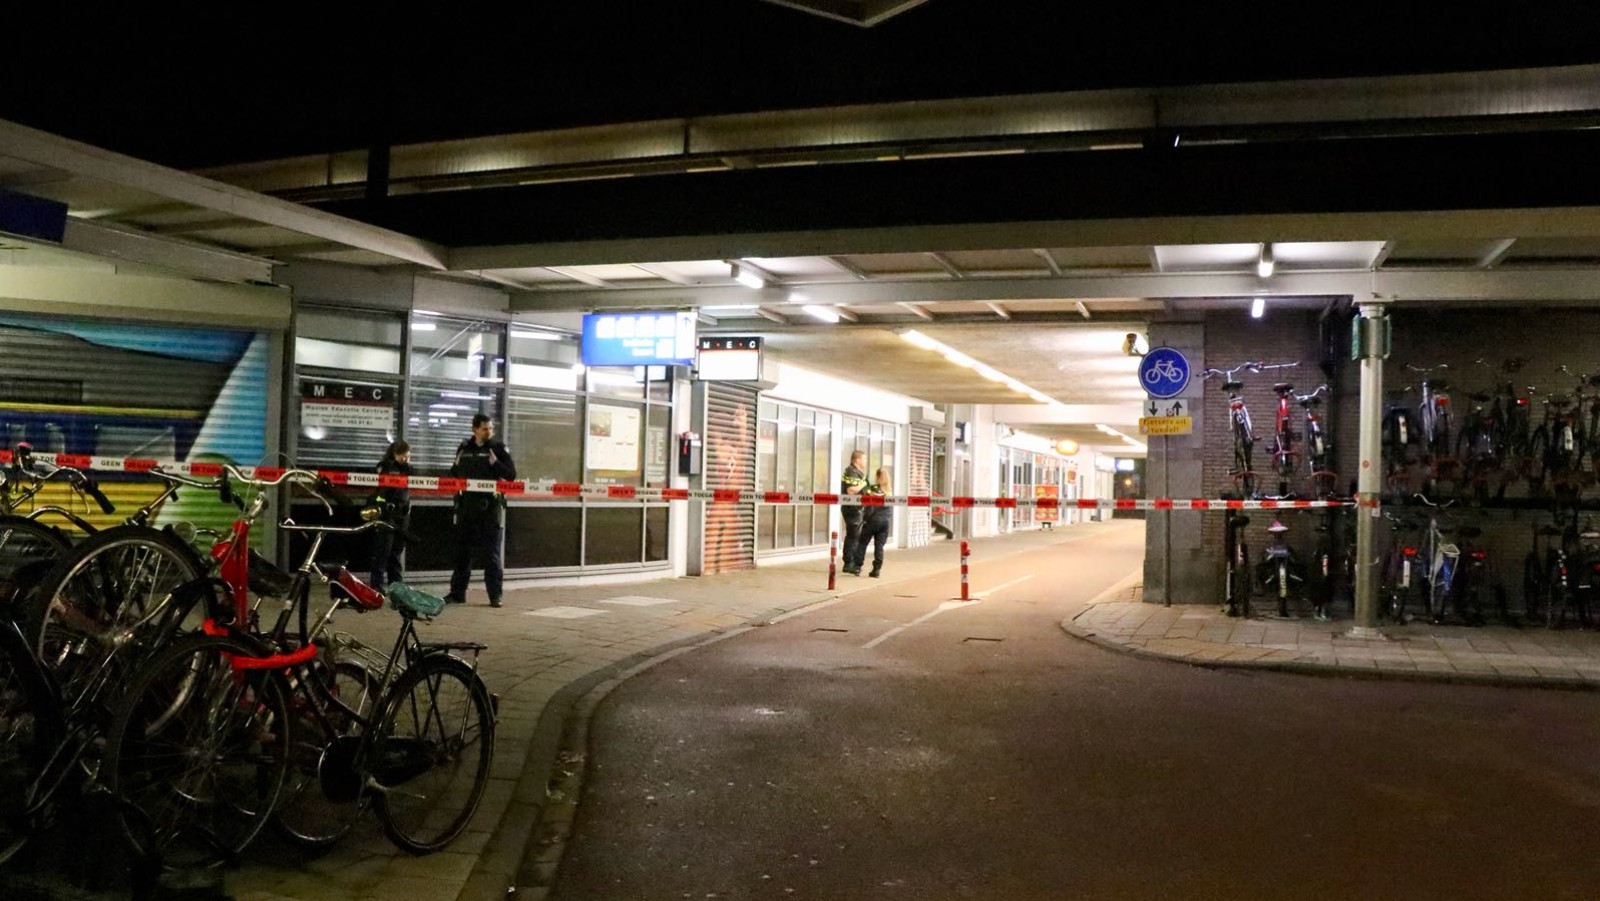 Station Muiderpoort, kiosk, explosie, 23 september 2018